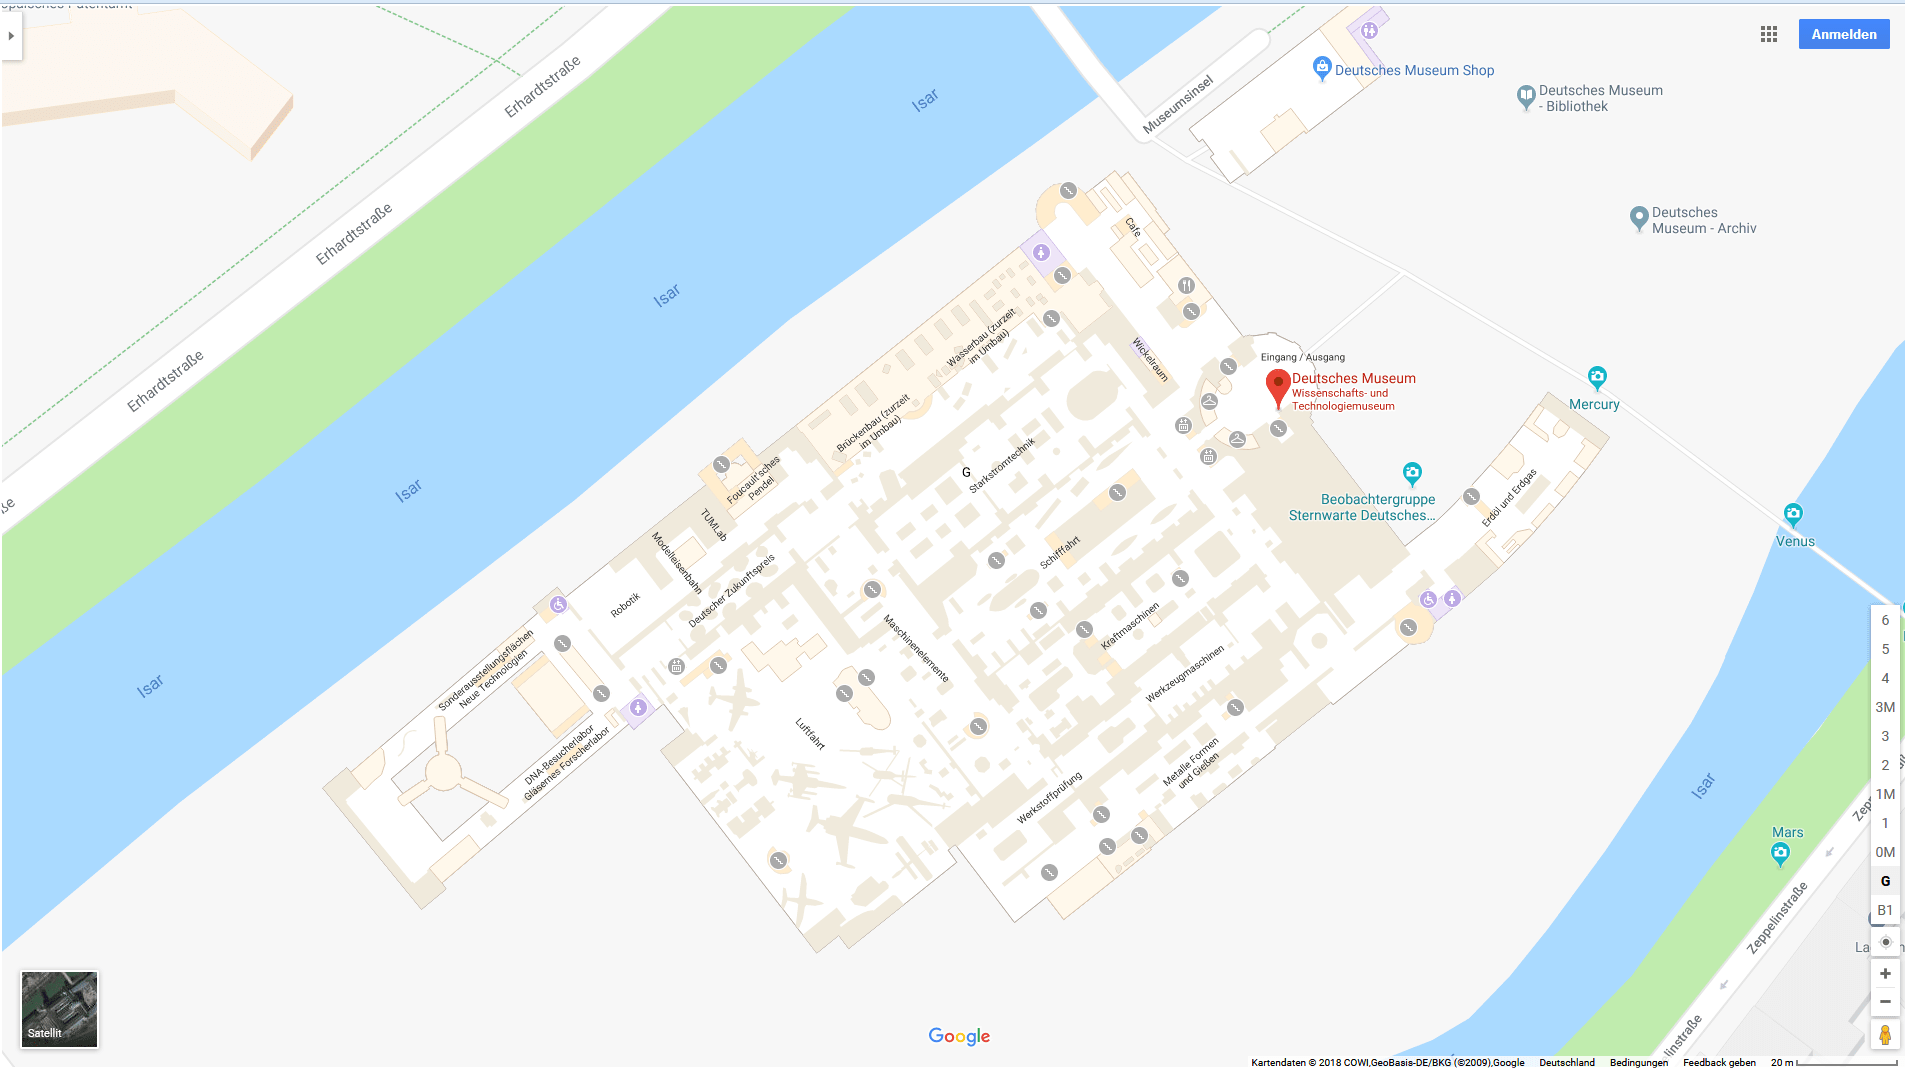 Google Indoor Maps_Deutsches Museum München